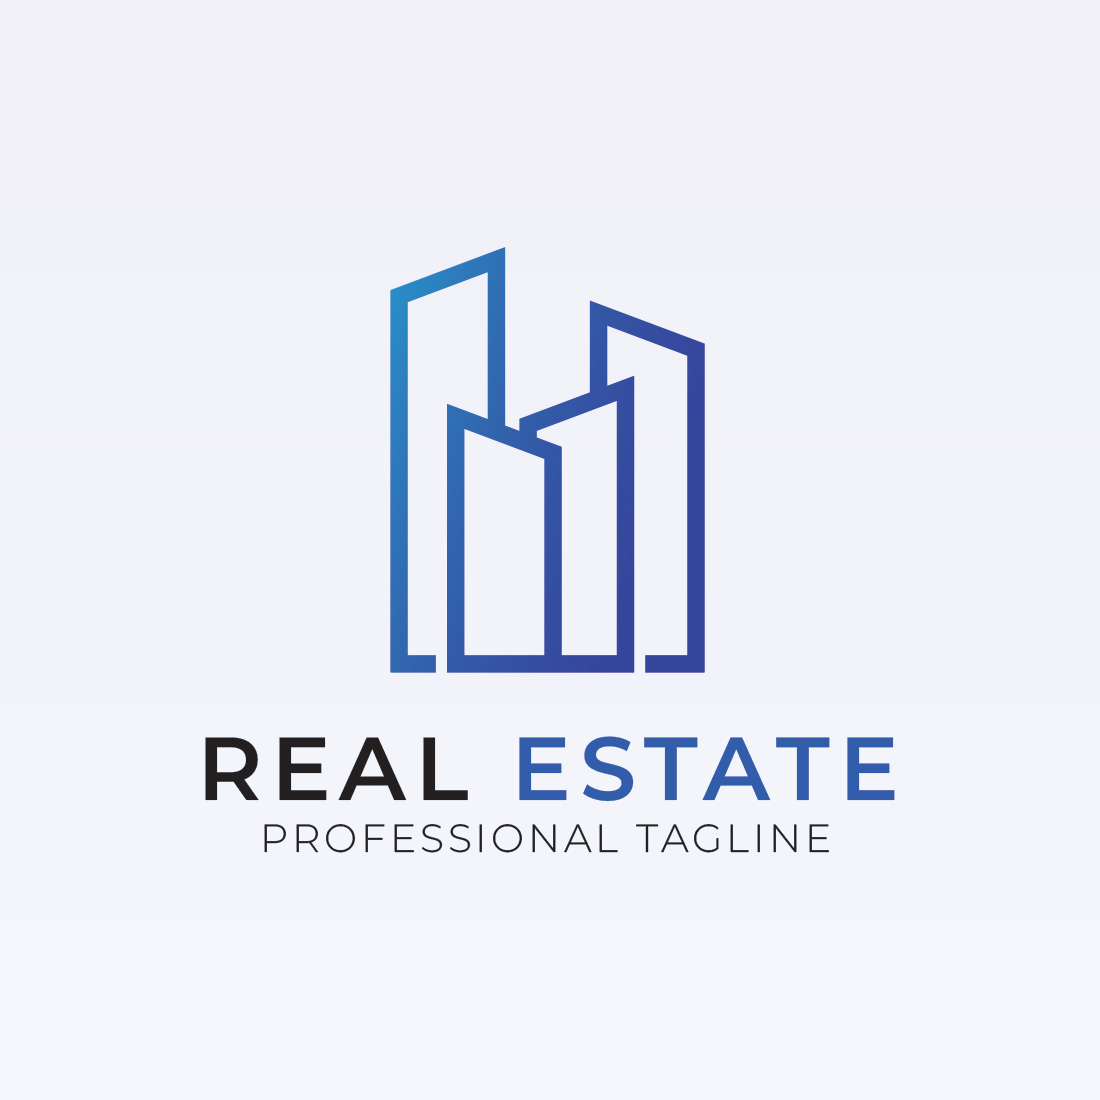 Real Estate Building Logo Bundle cover image.